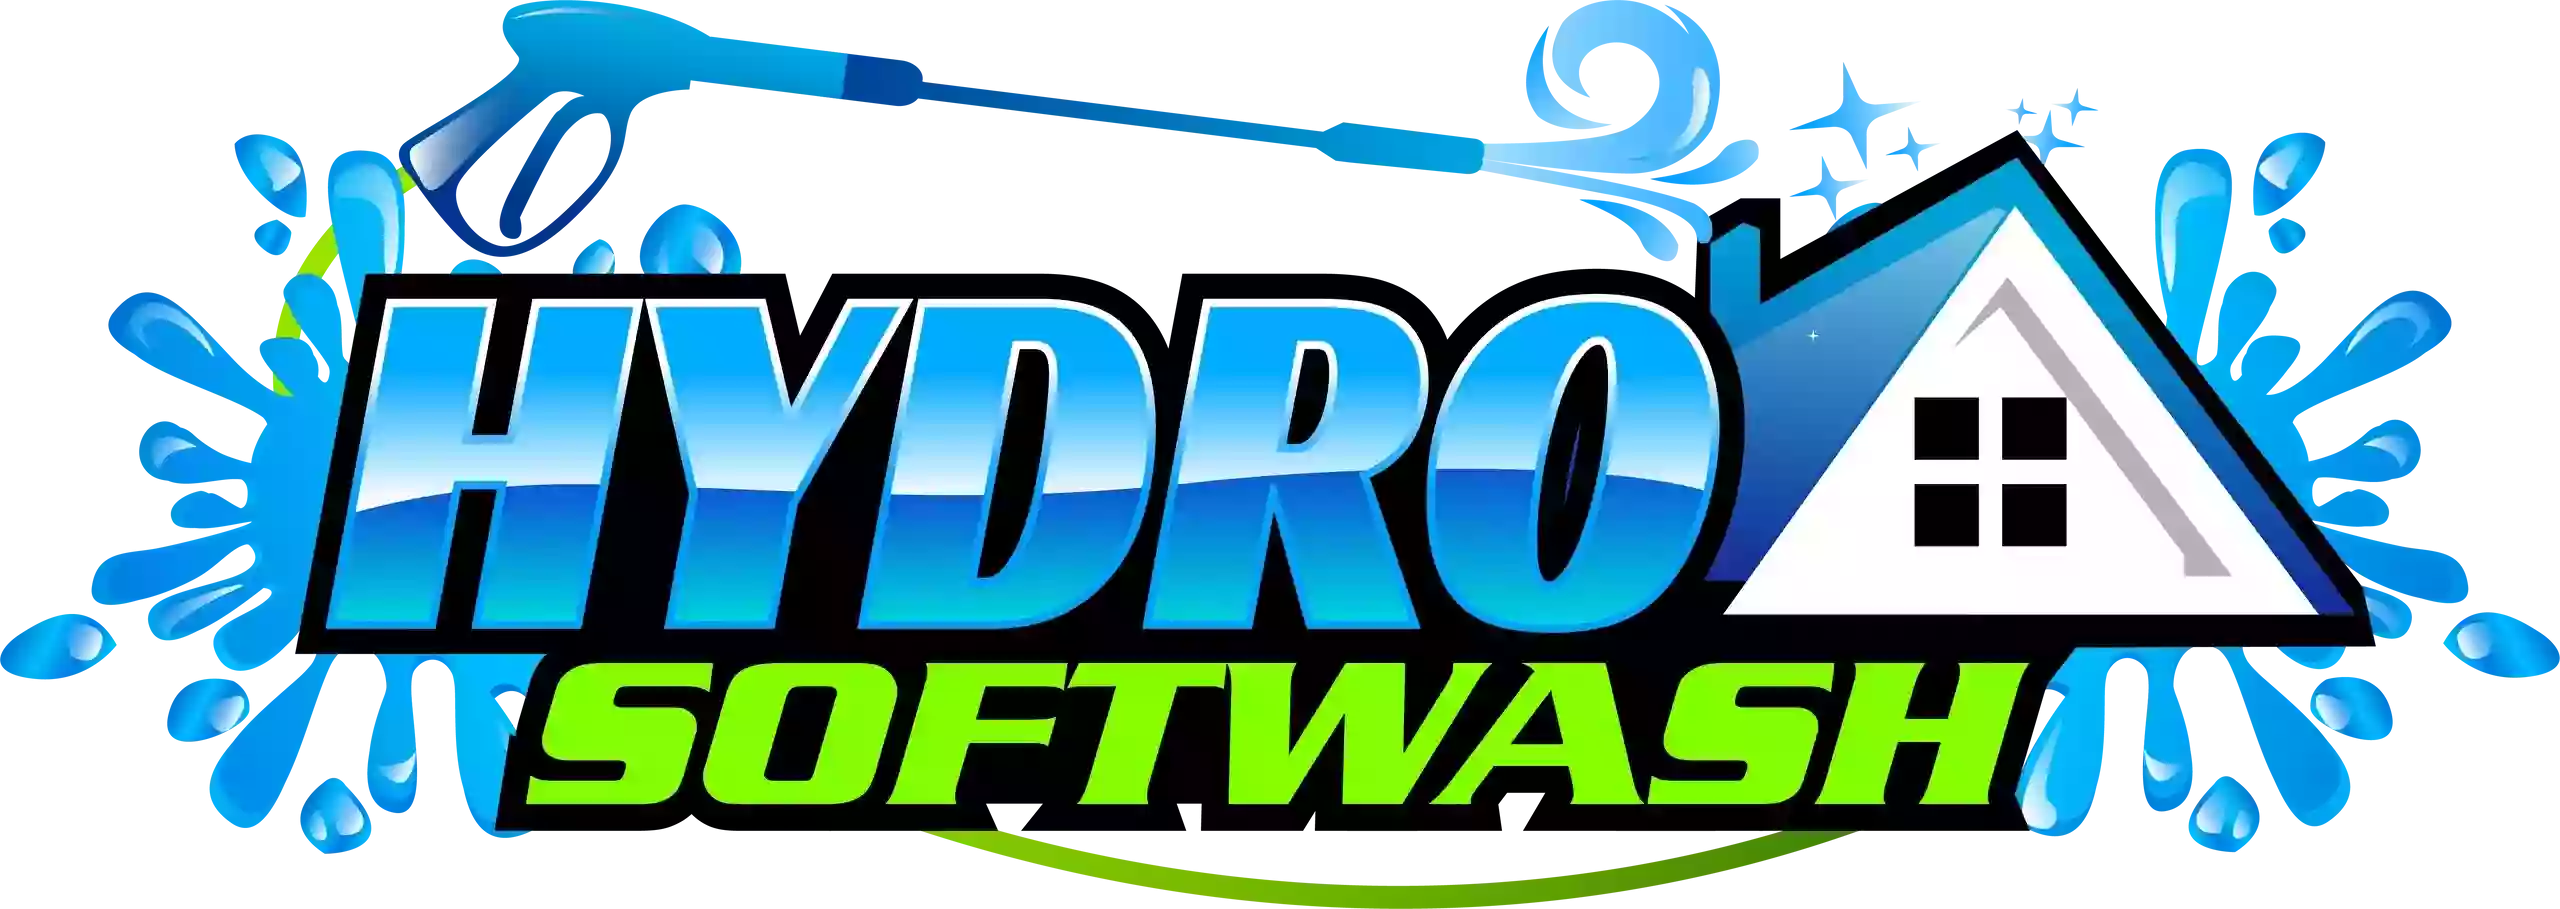 Hydro Softwash, LLC